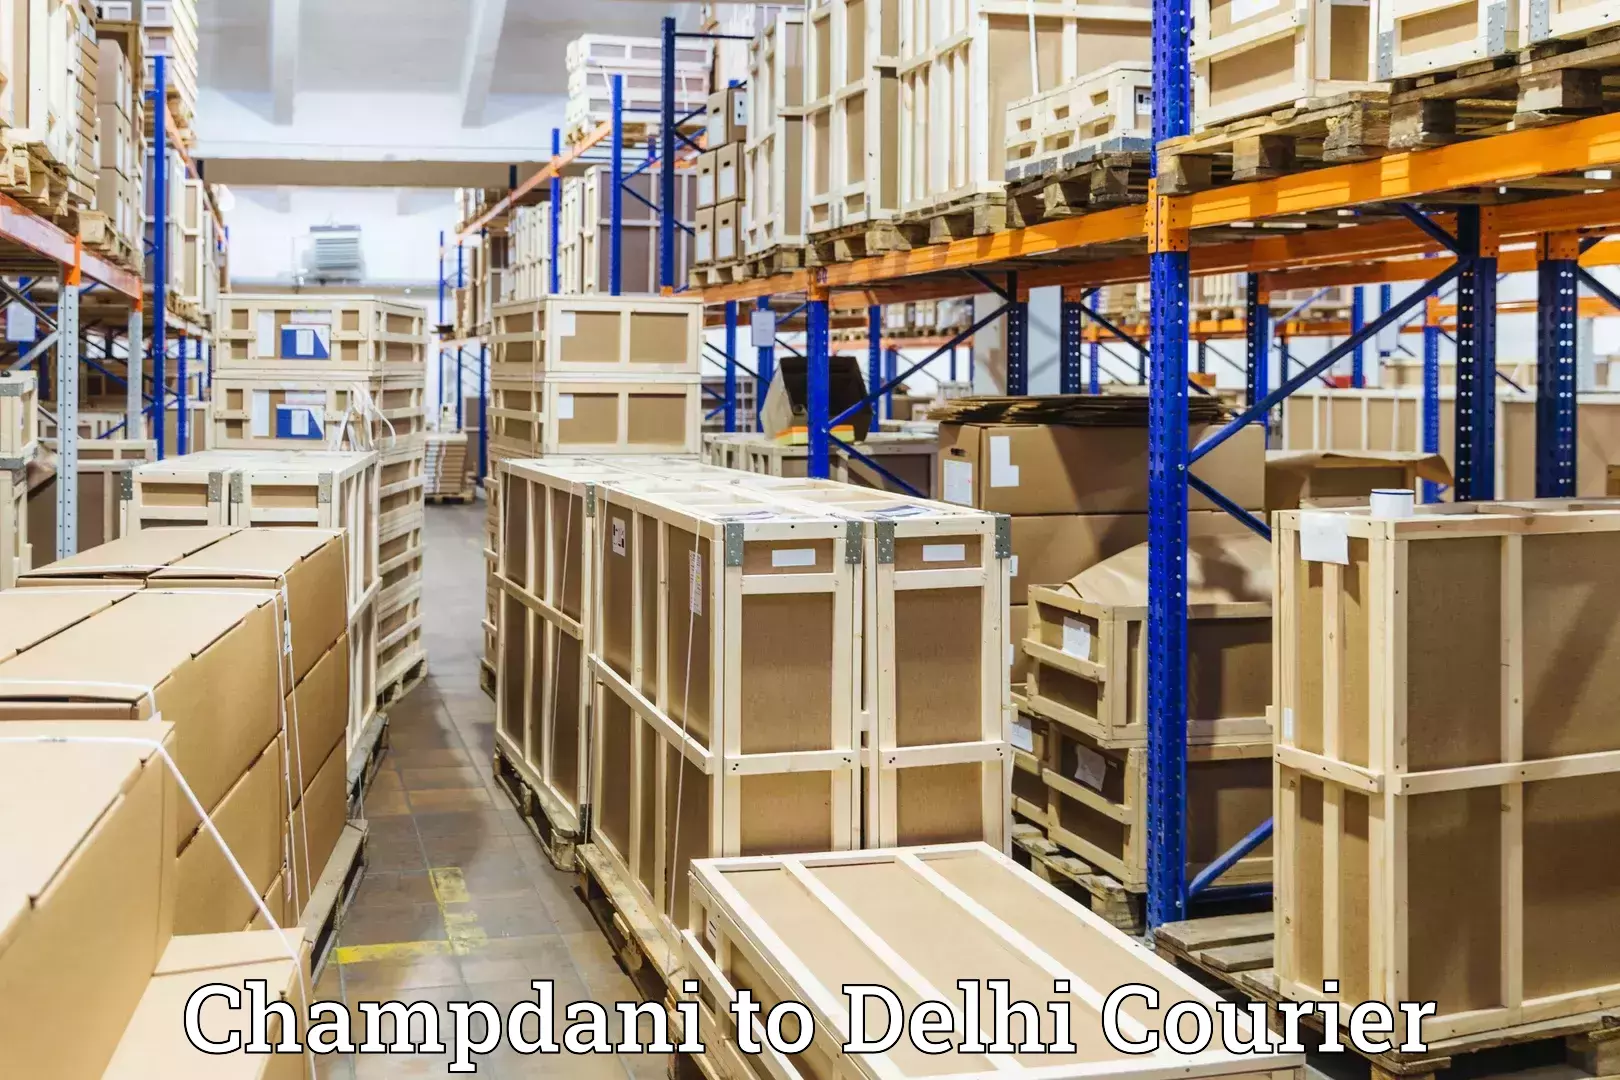 Baggage shipping service Champdani to Delhi